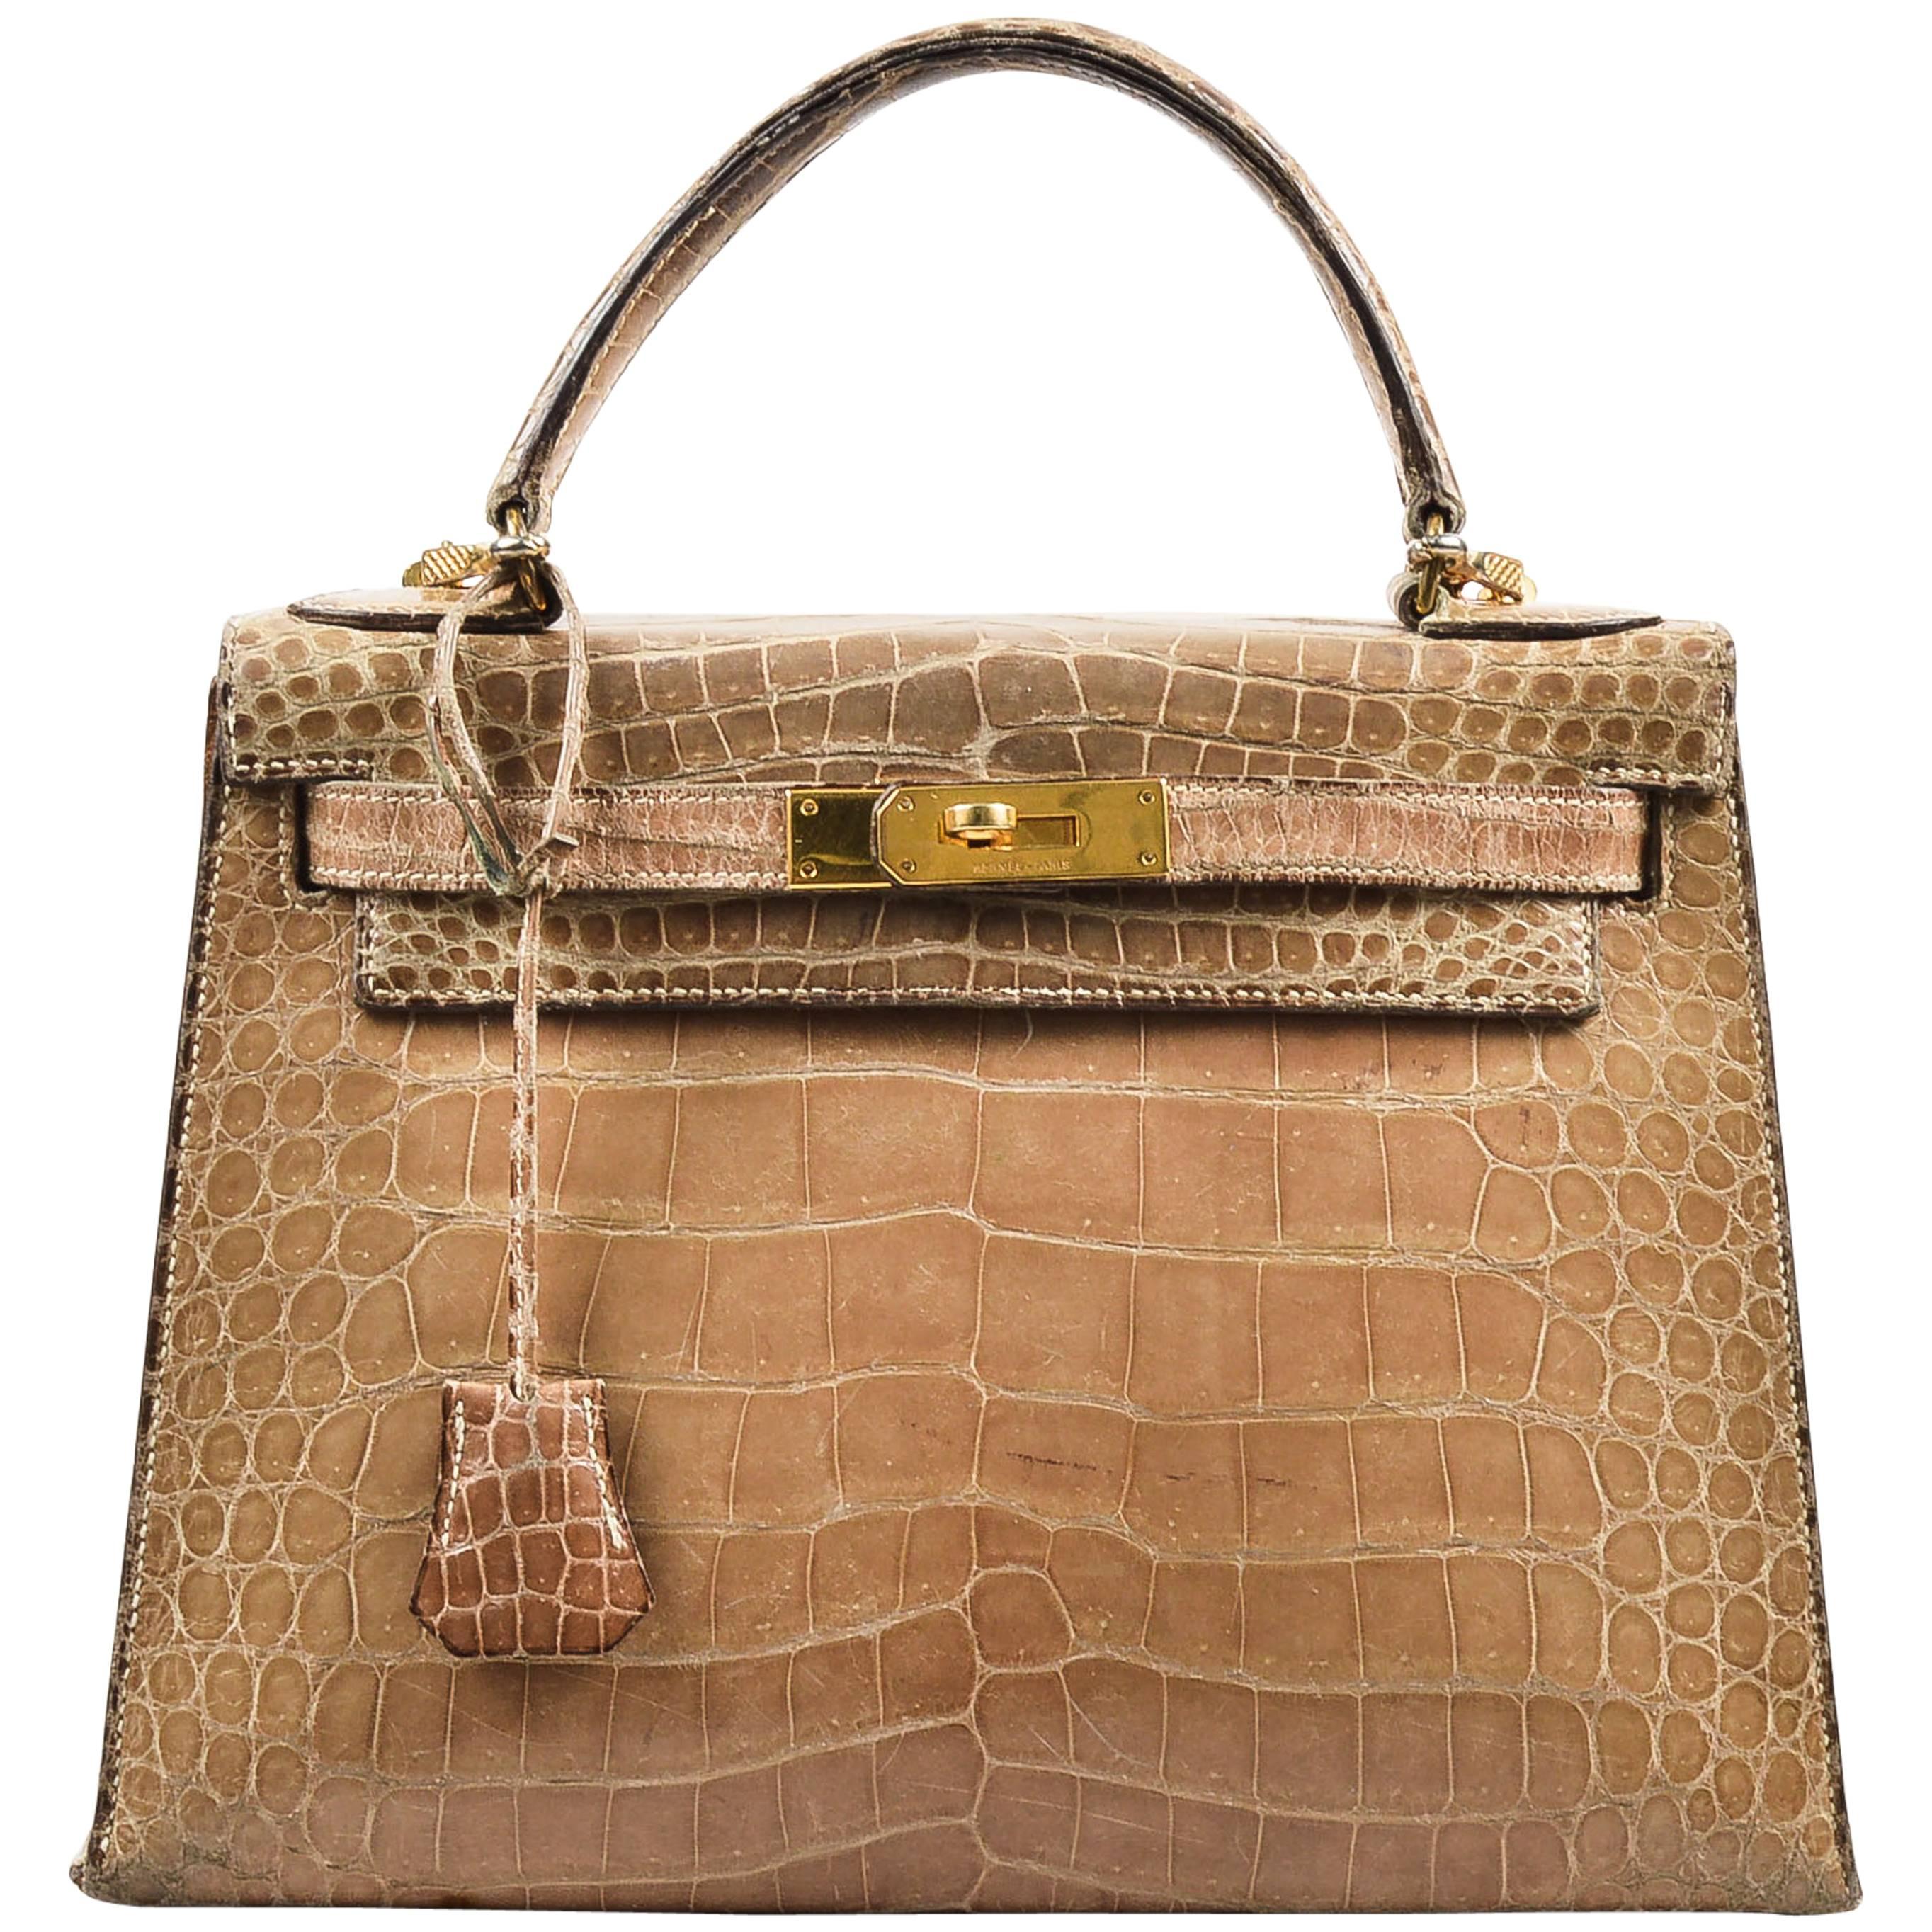 Vintage Hermes Taupe Crocodile Leather Gold Hardware "Kelly 28" Handbag For Sale